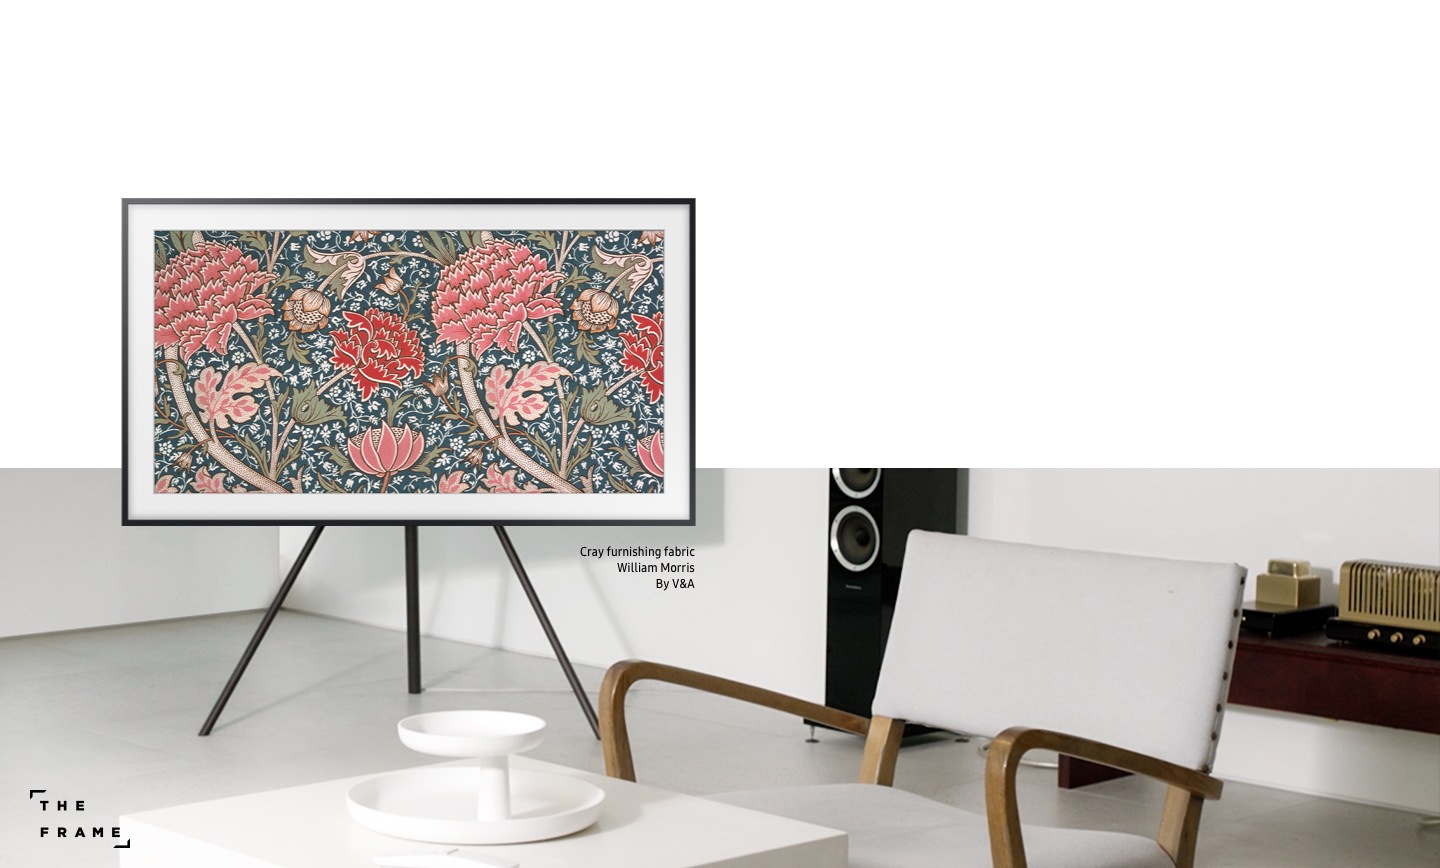 La televisión The Frame de Samsung muestra el trabajo artístico “Cray furnishing fabric” de William Morris, V&A. La televisión The Frame hace cualquier espacio más estético y puede programarse en diferentes estilos en cualquier lugar donde se coloque.